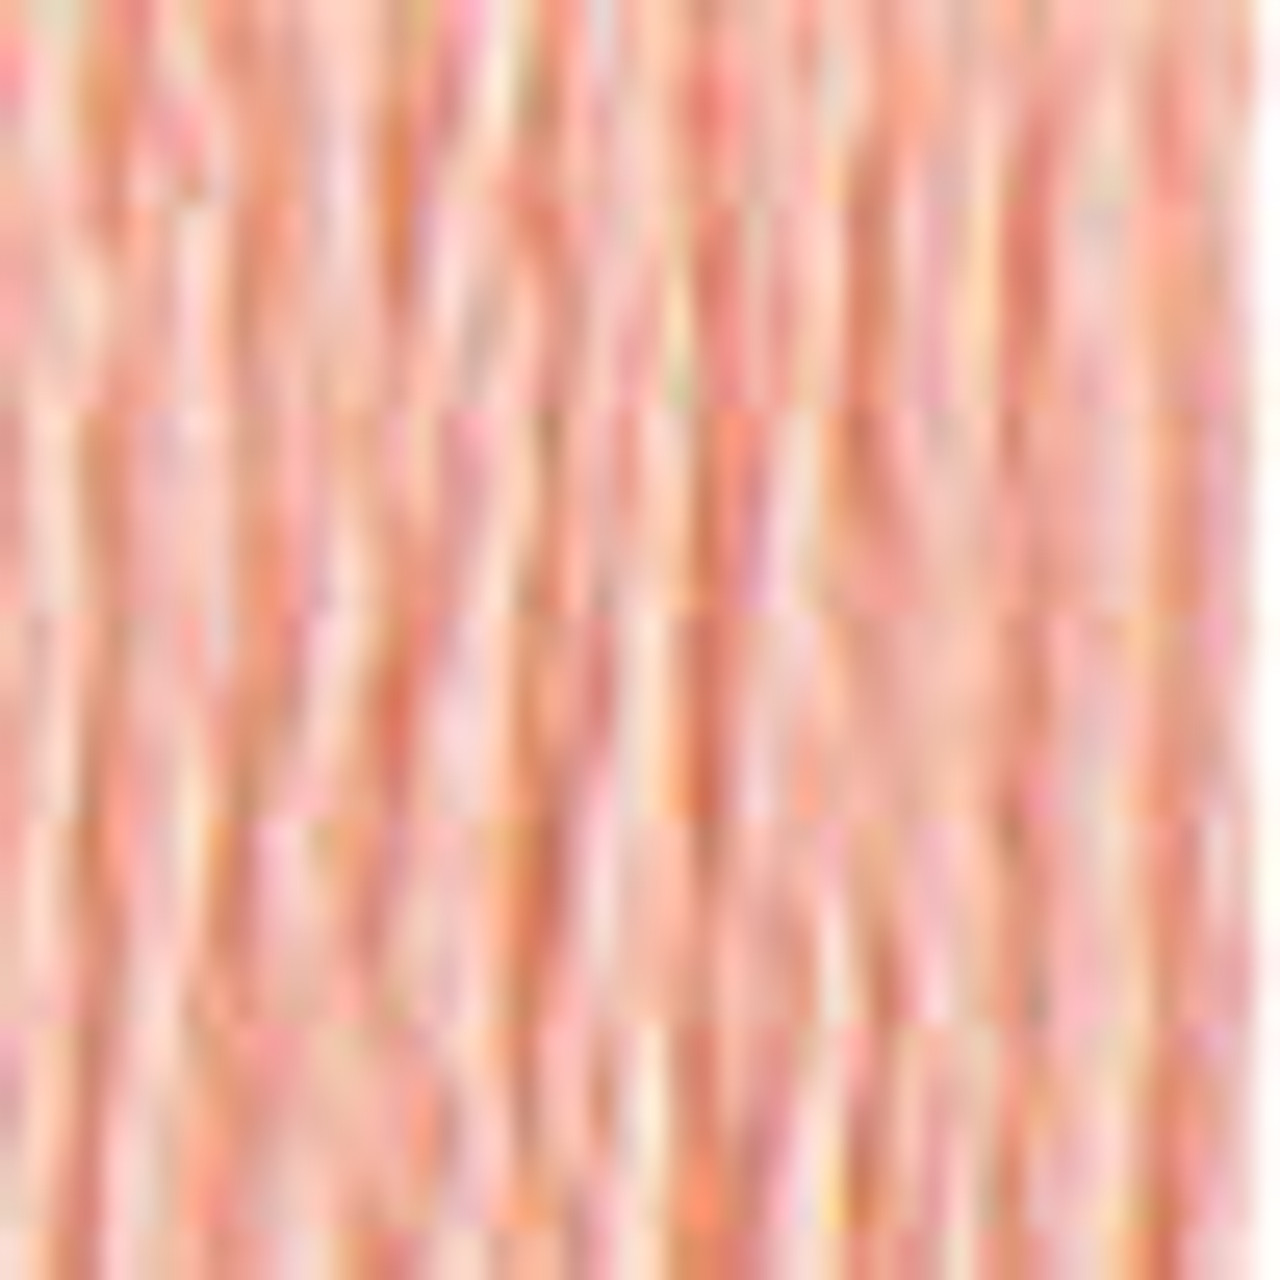 DMC # 224 Very Light Shell Pink Floss / Thread